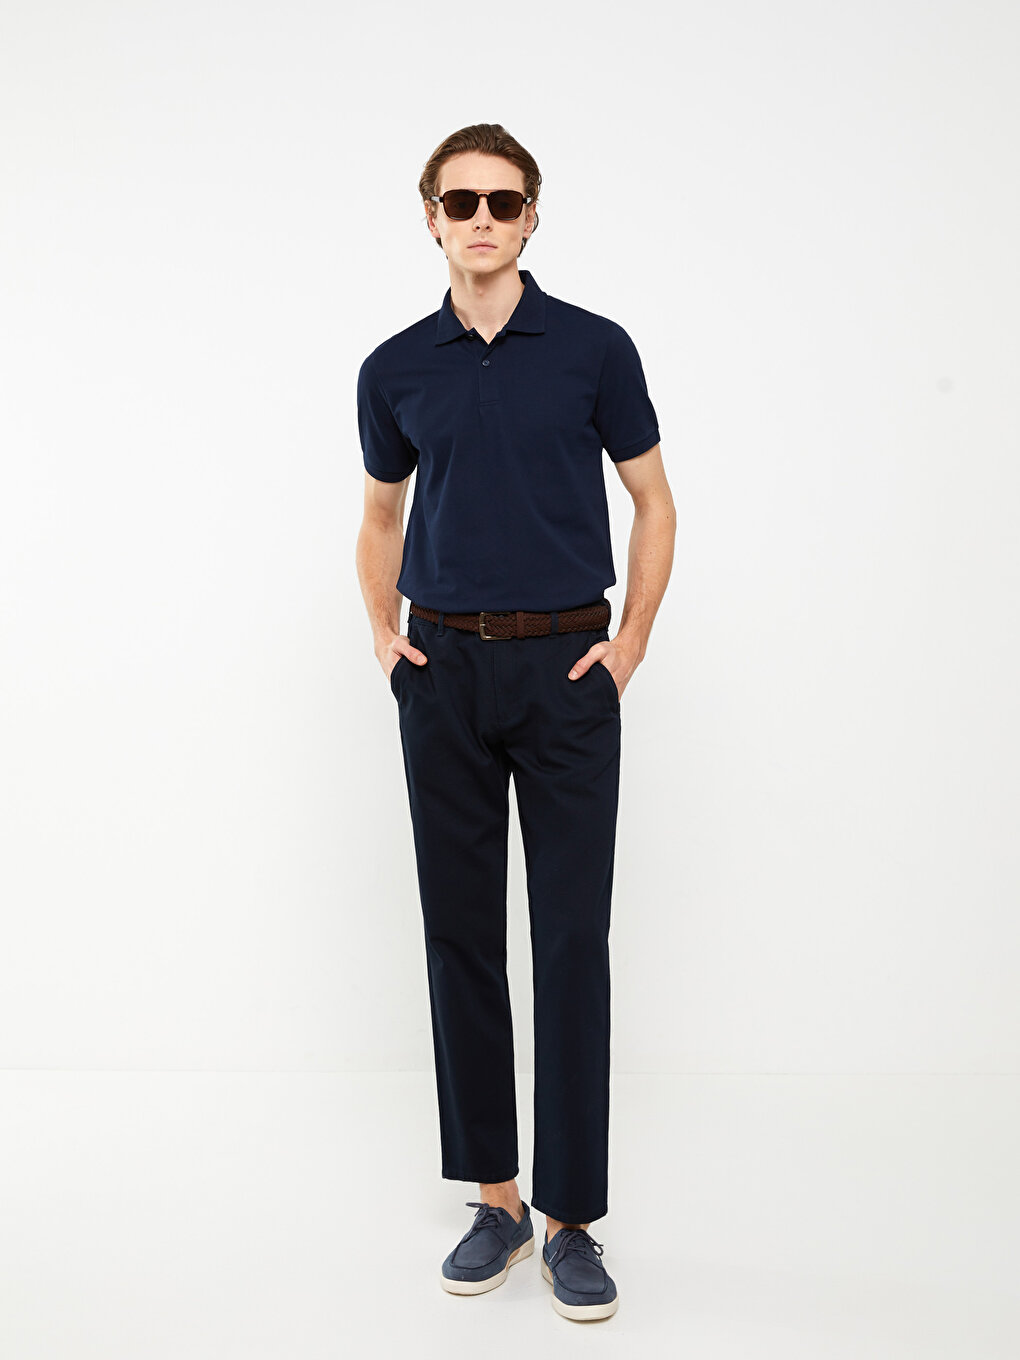 Standard Pattern Men's Chino Trousers -S3ET85Z8-KN7 - S3ET85Z8-KN7 - LC ...